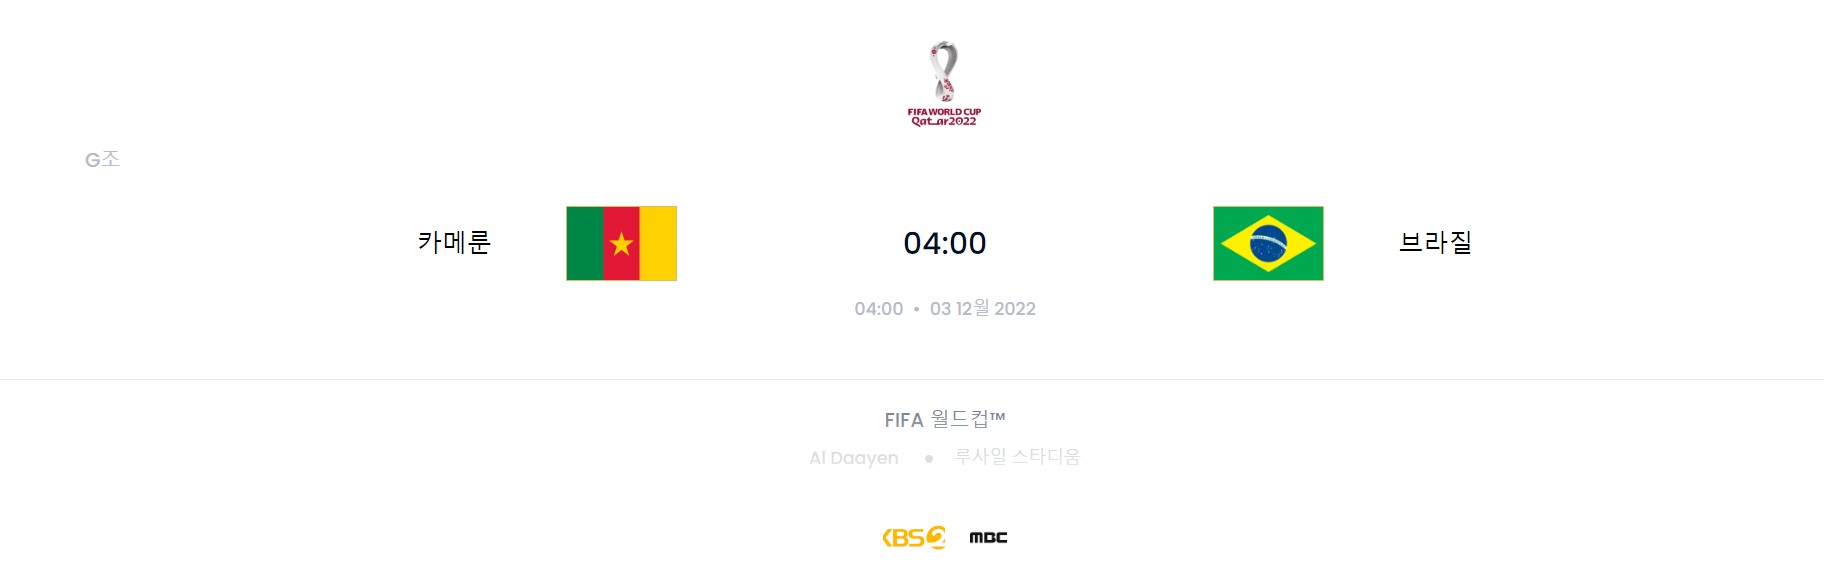 카타르 월드컵 G조 5경기 (카메룬 VS 브라질)